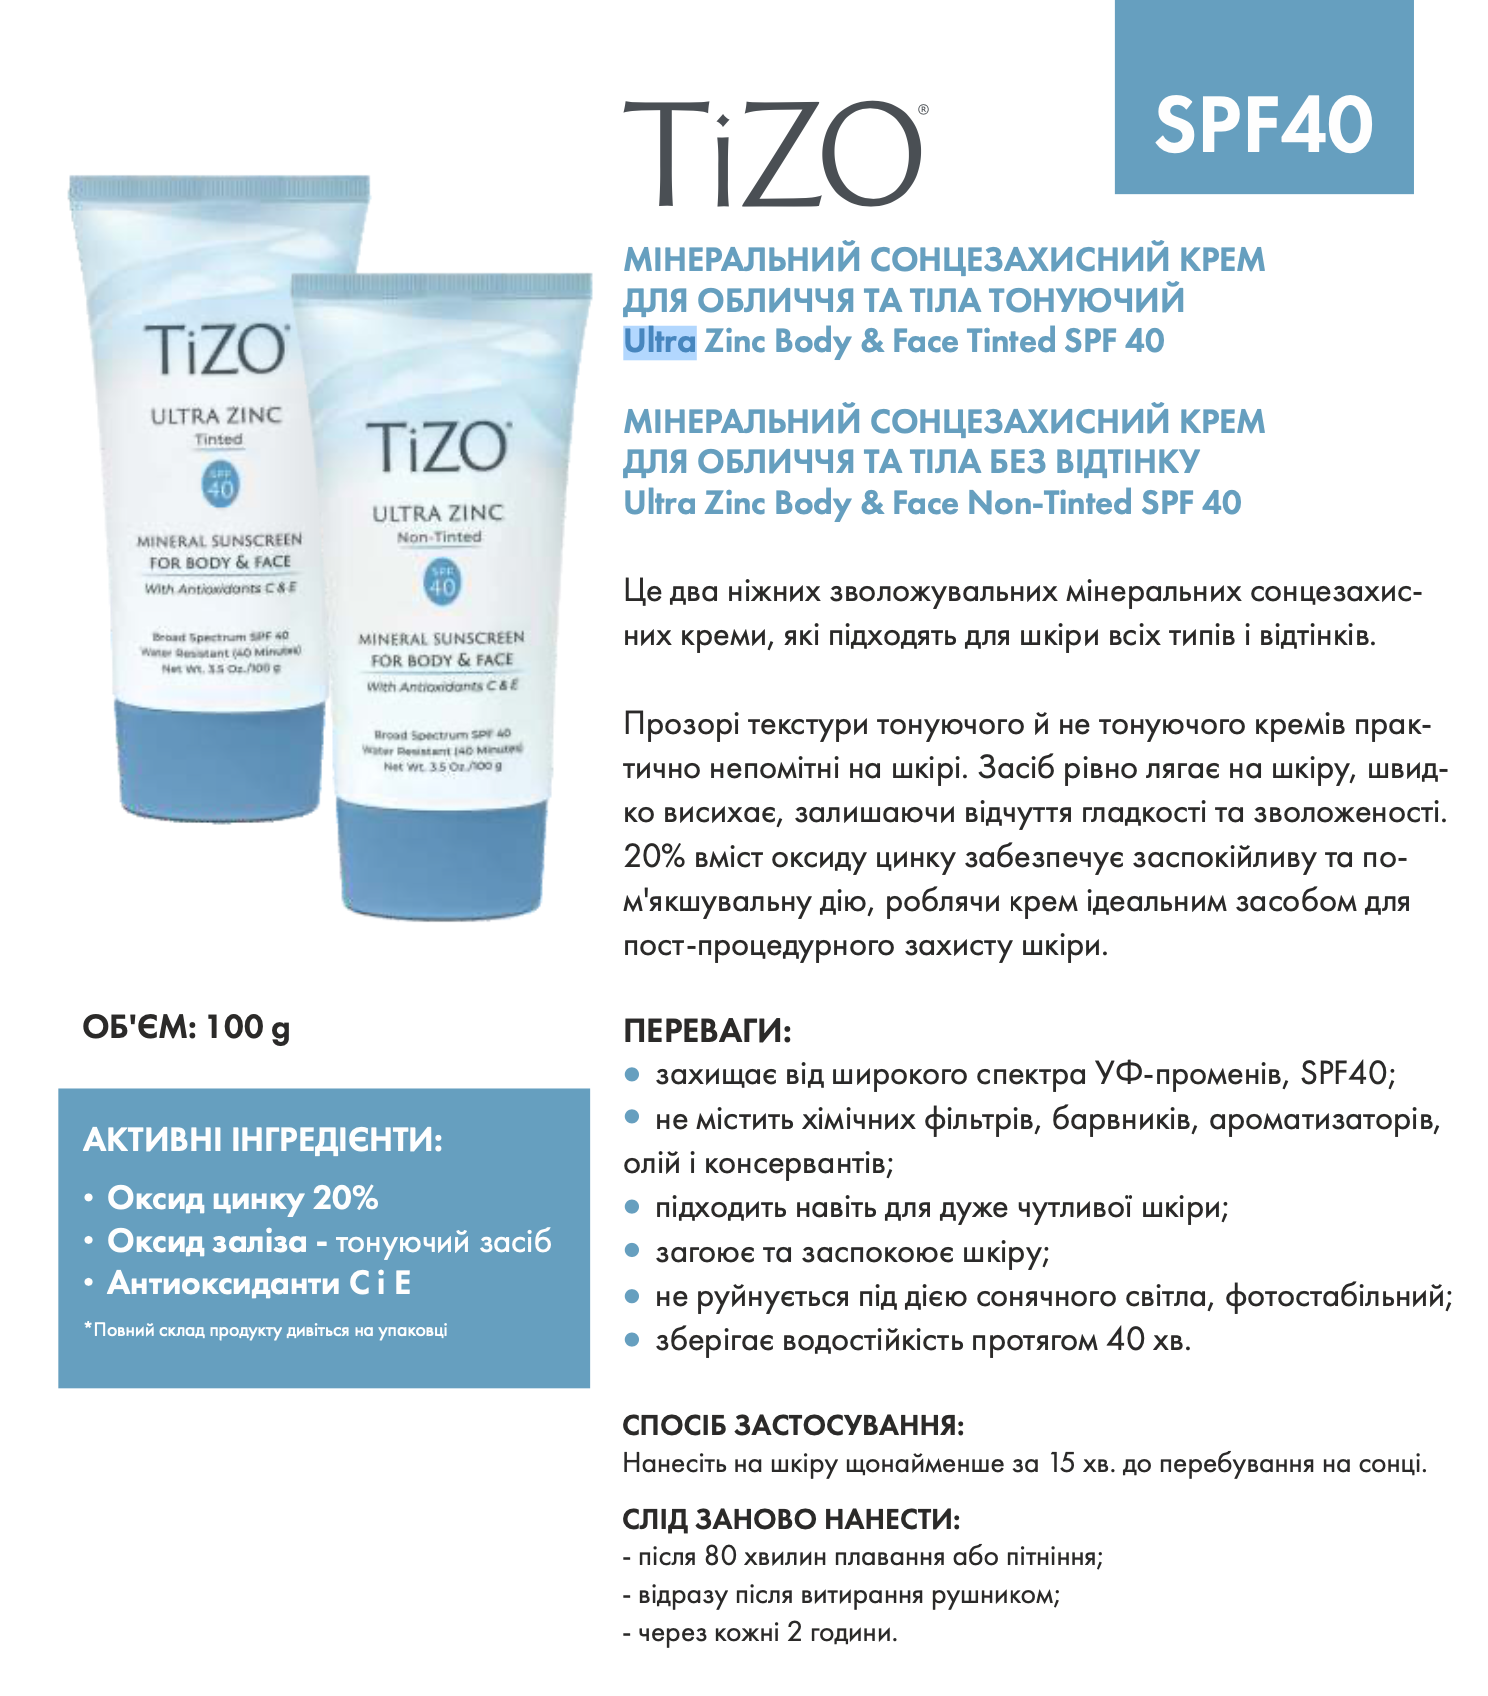 tizo-ultra-zinc-body-face-tinted-spf-40